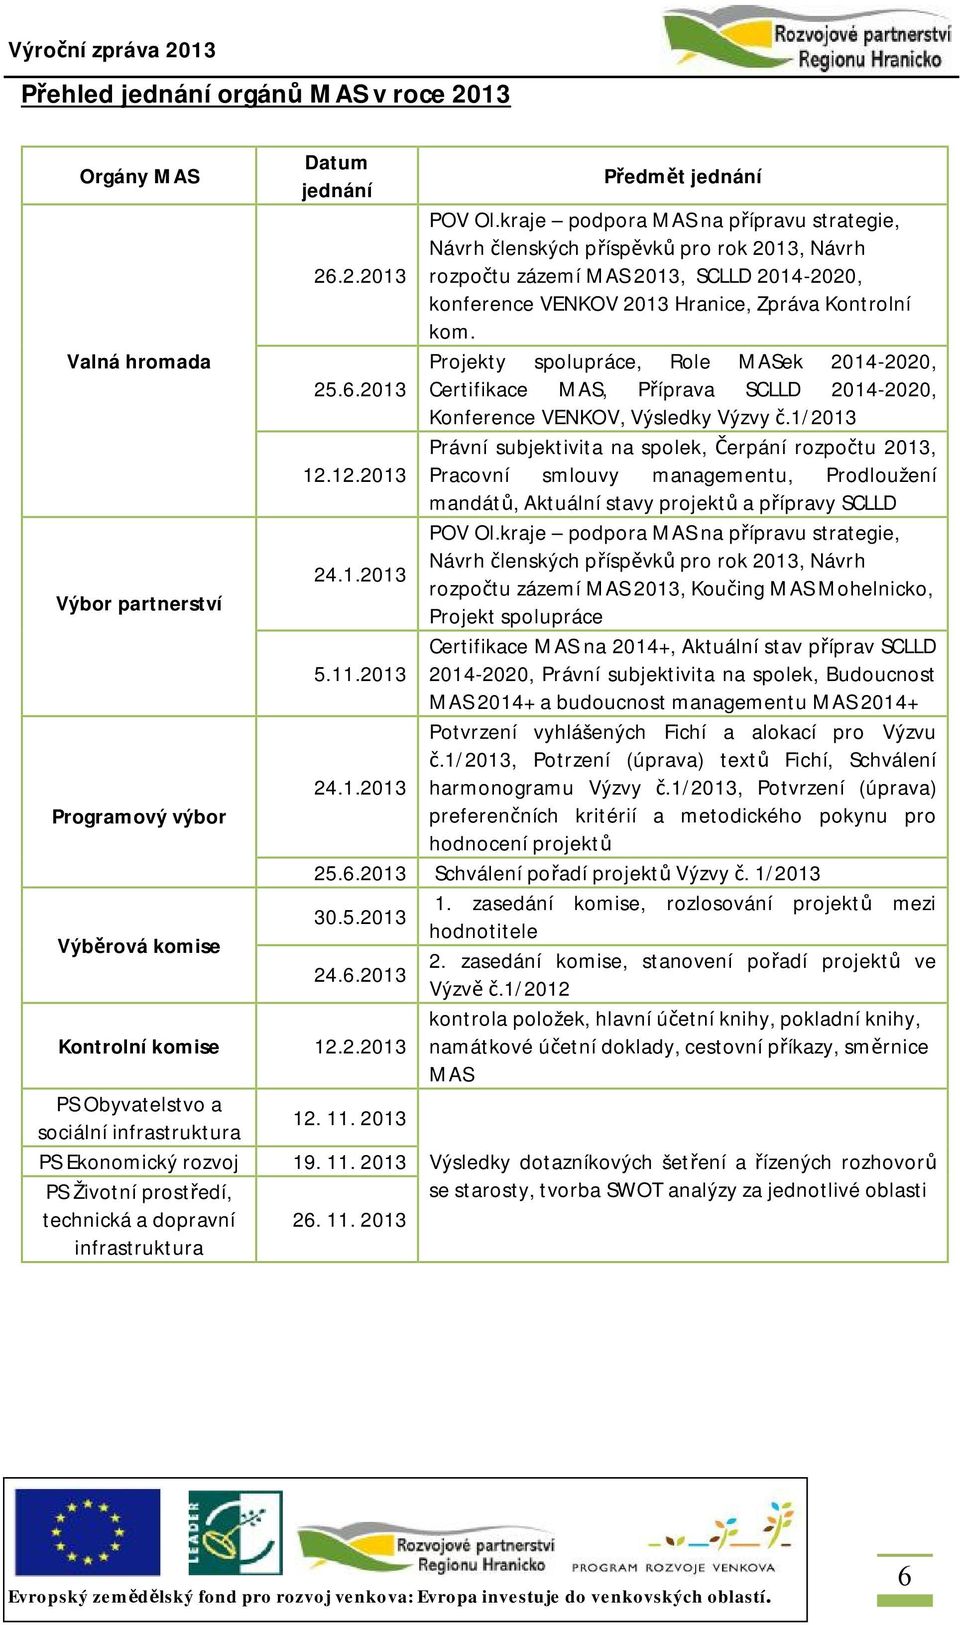 Valná hromada Projekty spolupráce, Role MASek 2014-2020, 25.6.2013 Certifikace MAS, Příprava SCLLD 2014-2020, Konference VENKOV, Výsledky Výzvy č.